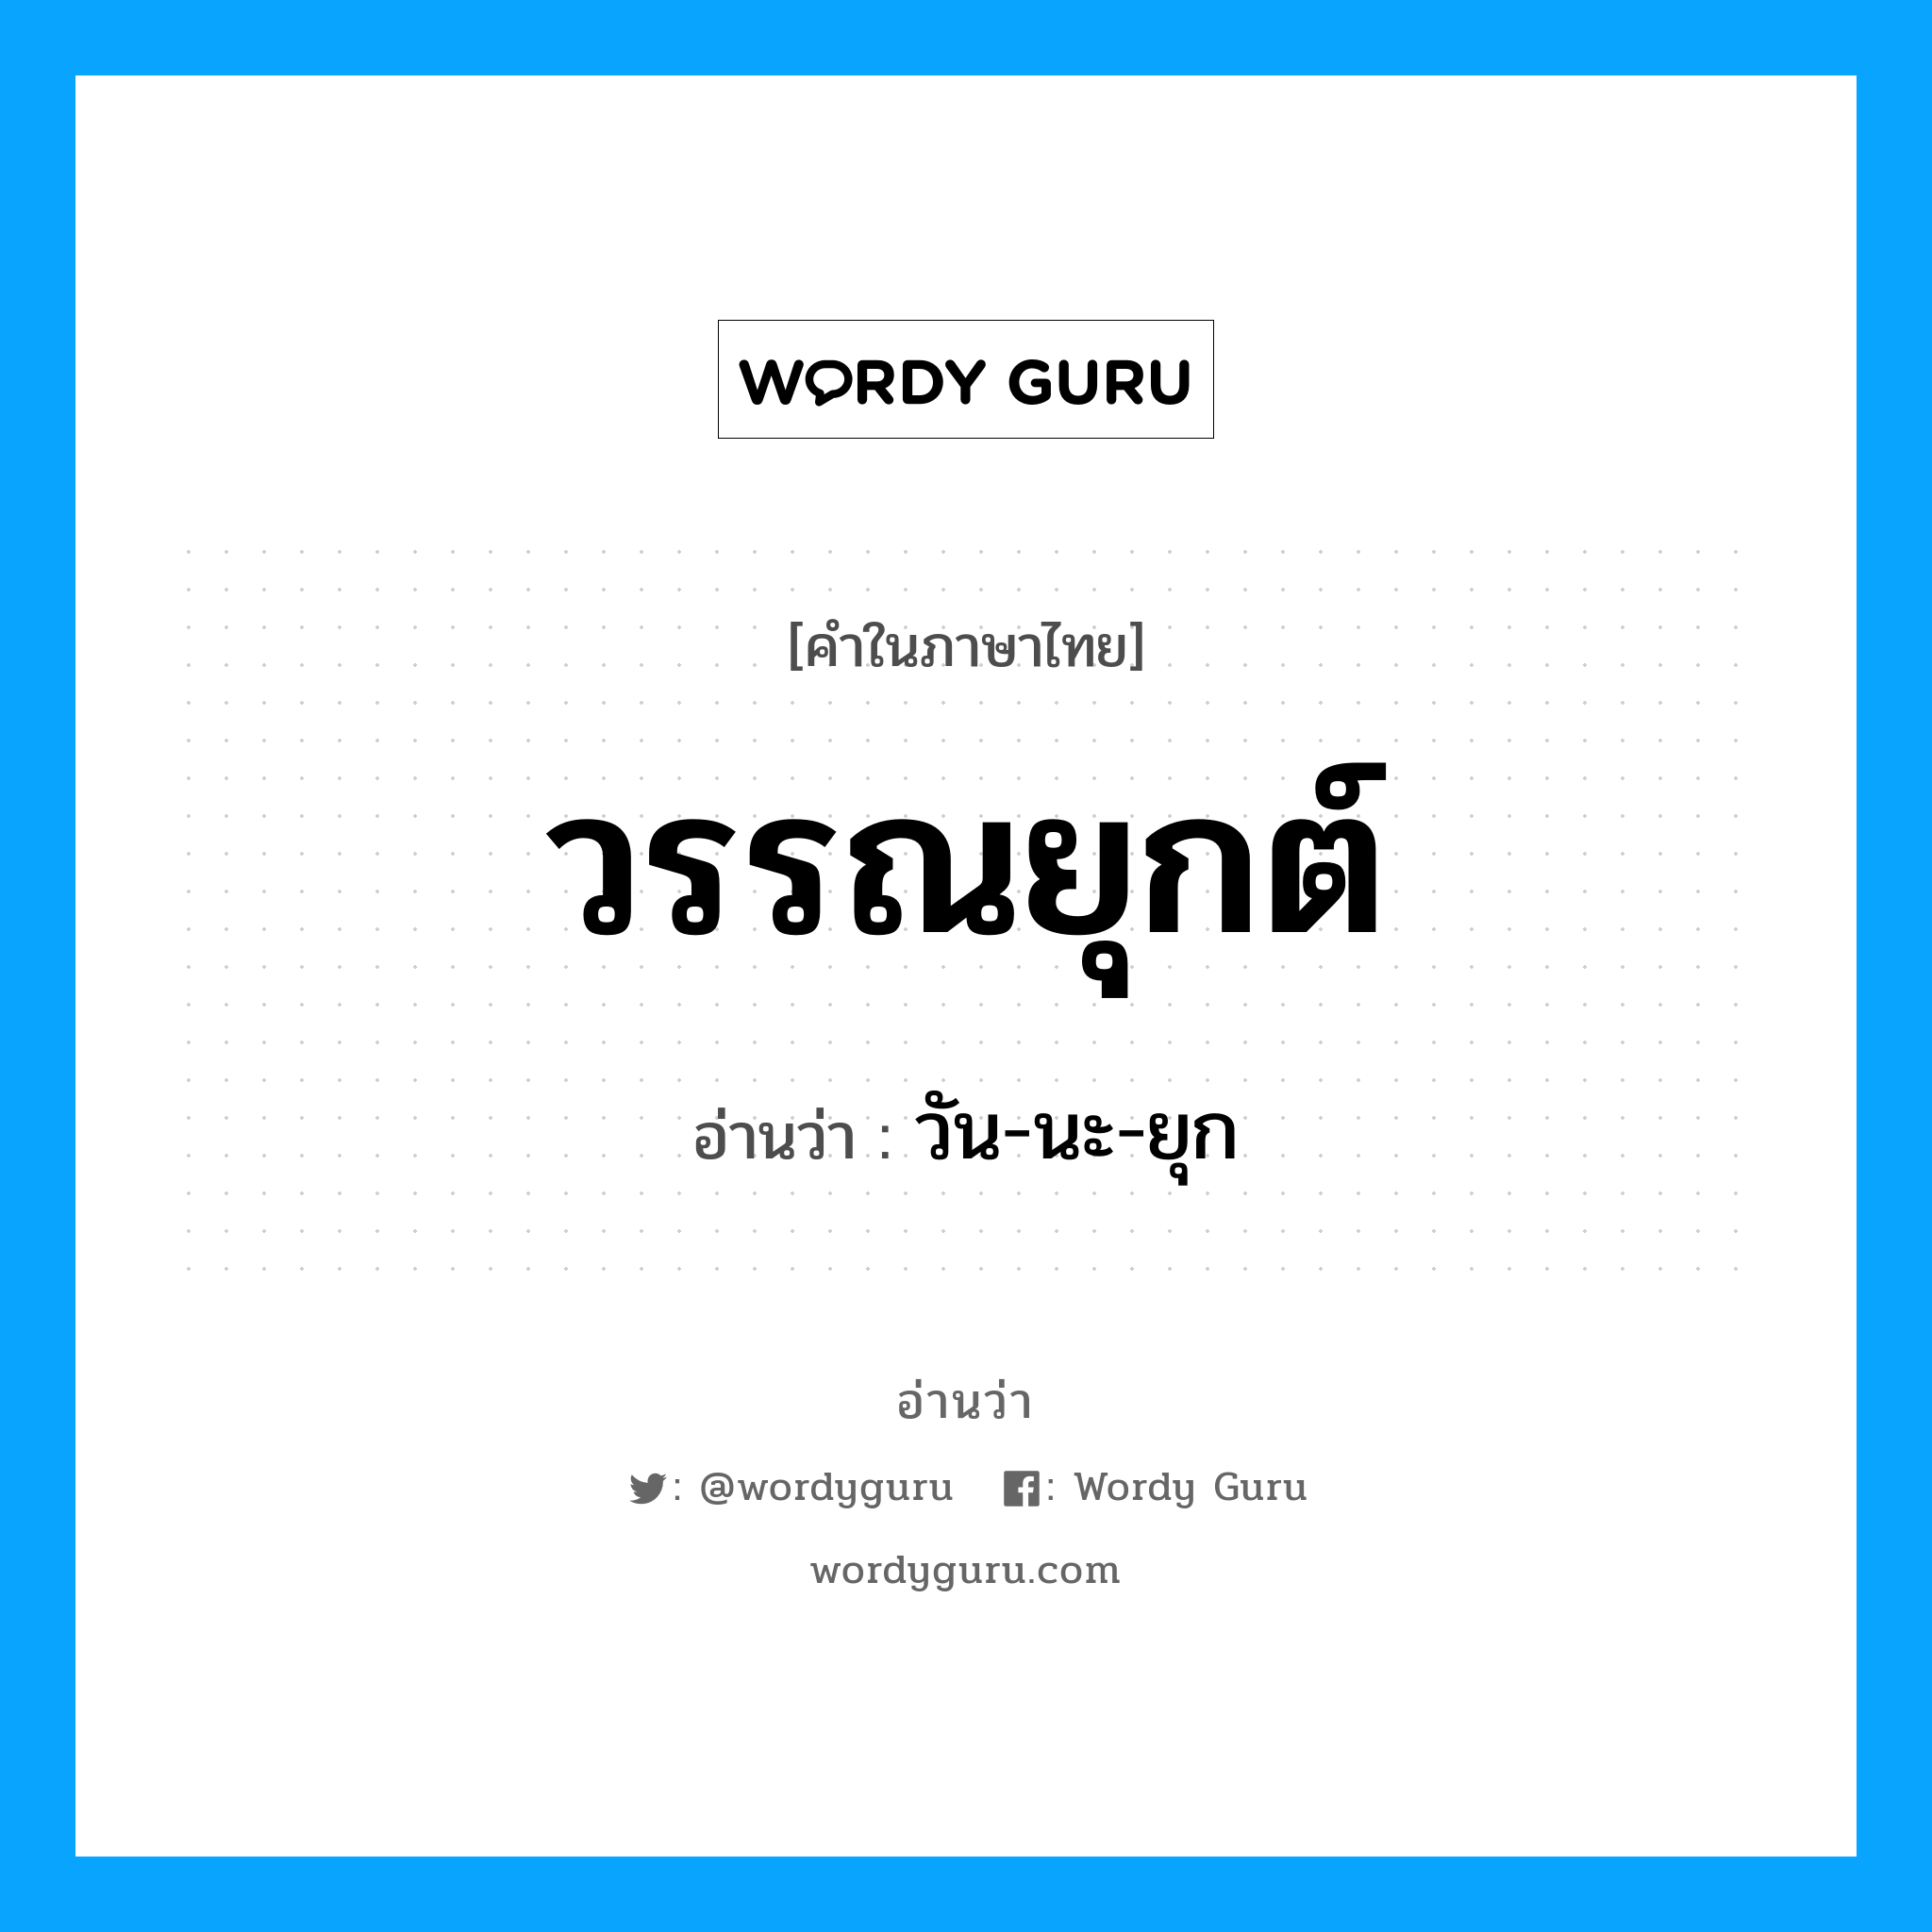 วัน-นะ-ยุก เป็นคำอ่านของคำไหน?, คำในภาษาไทย วัน-นะ-ยุก อ่านว่า วรรณยุกต์